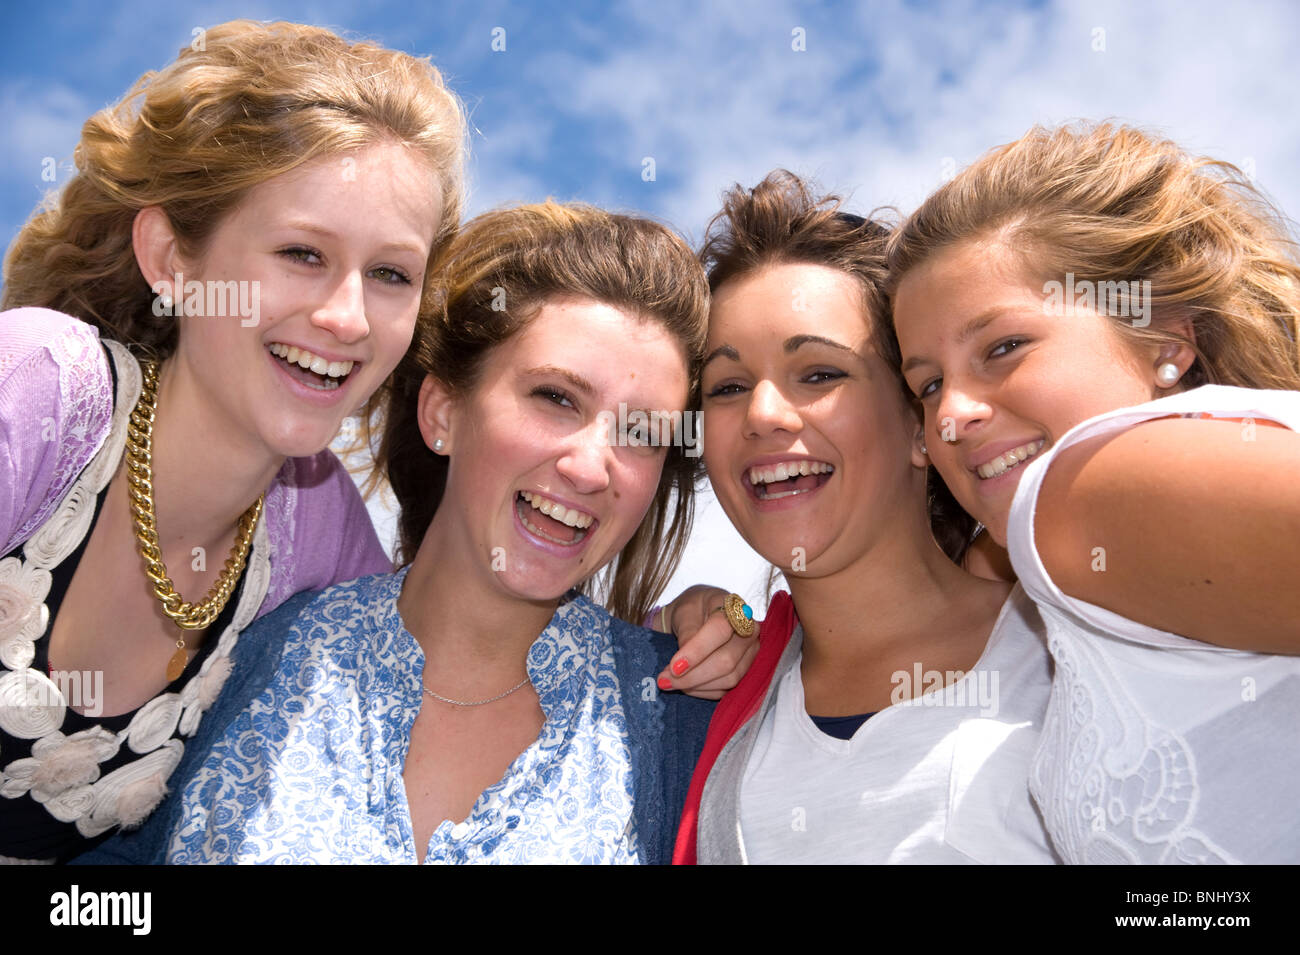 15 16 4 ragazza adolescente in genere normalmente scenario giorno quattro amici in modo divertente felicemente capi capi pozzanghere all'esterno del parcheggio esterno Foto Stock